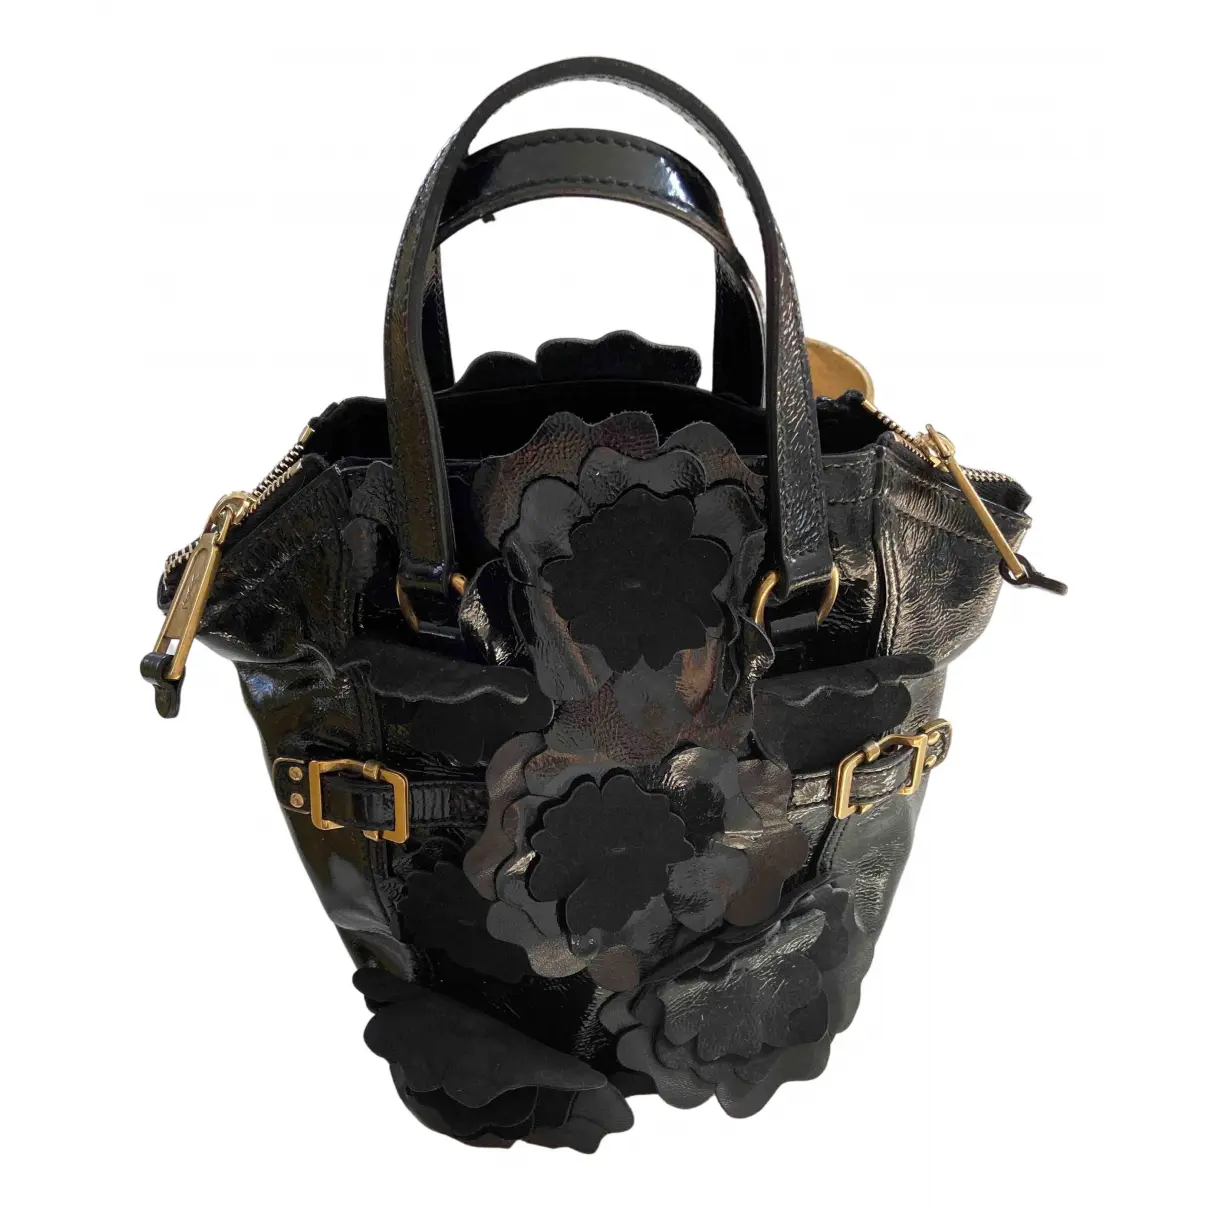 Downtown patent leather handbag Yves Saint Laurent - Vintage